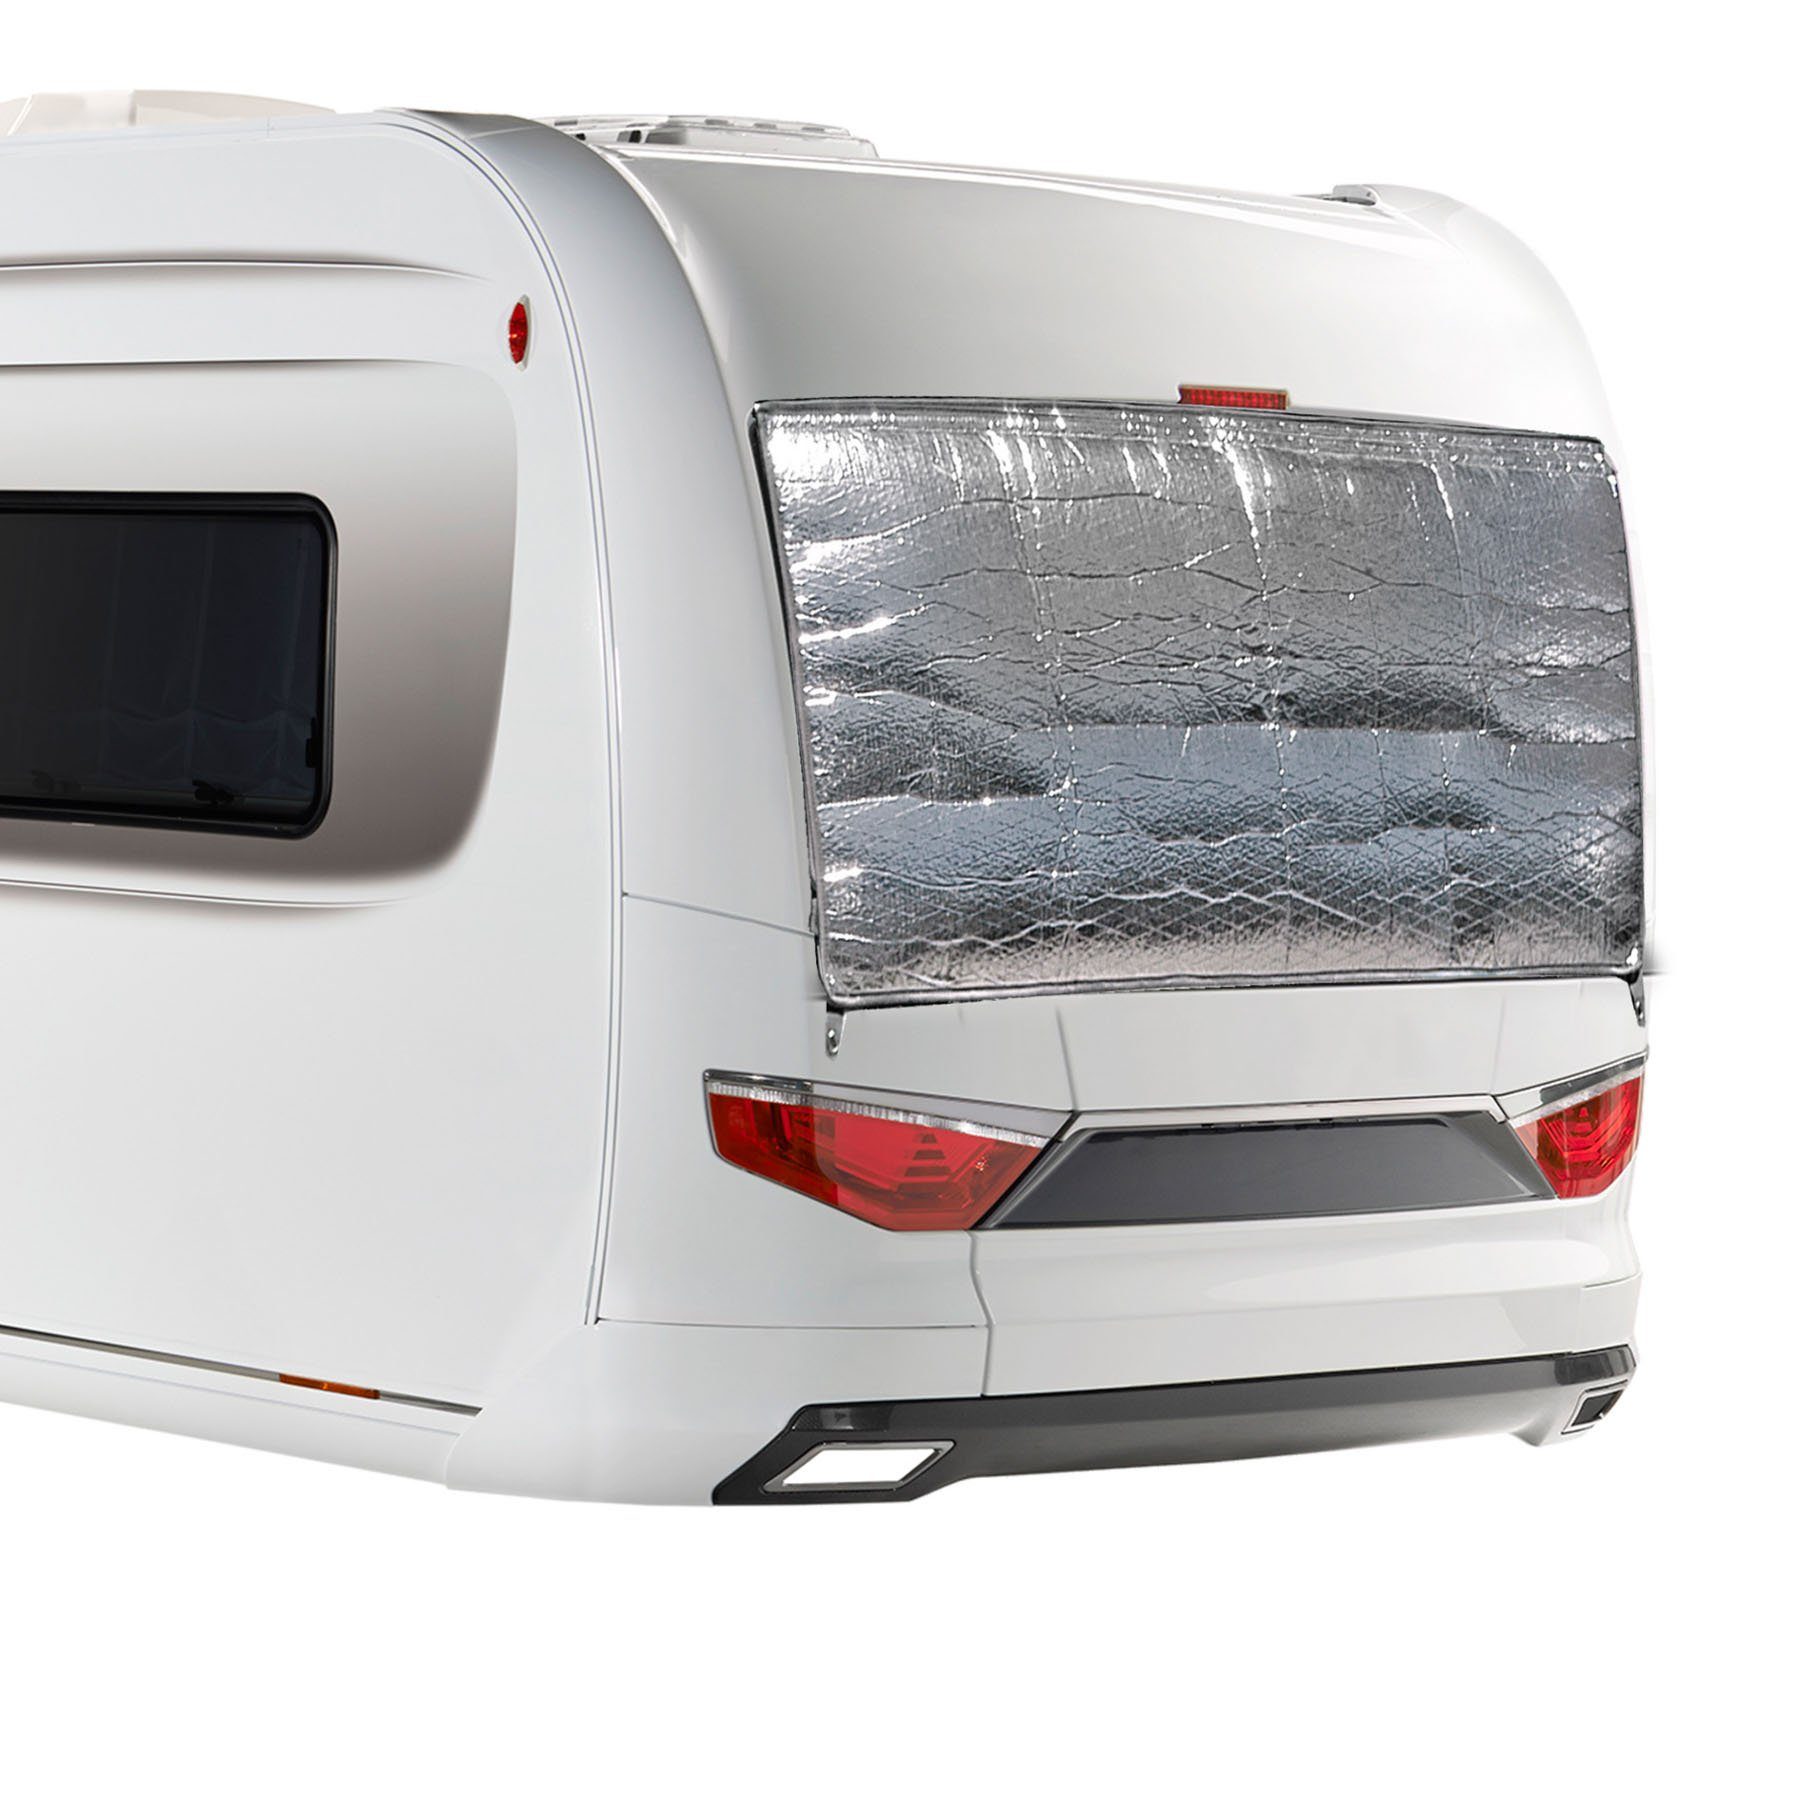 BRUNNER Wohnmobilschutzhülle Fenster Matte Cara-Mats Thermomatte, Außen Wohnwagen 180x80cm Bus Caravan